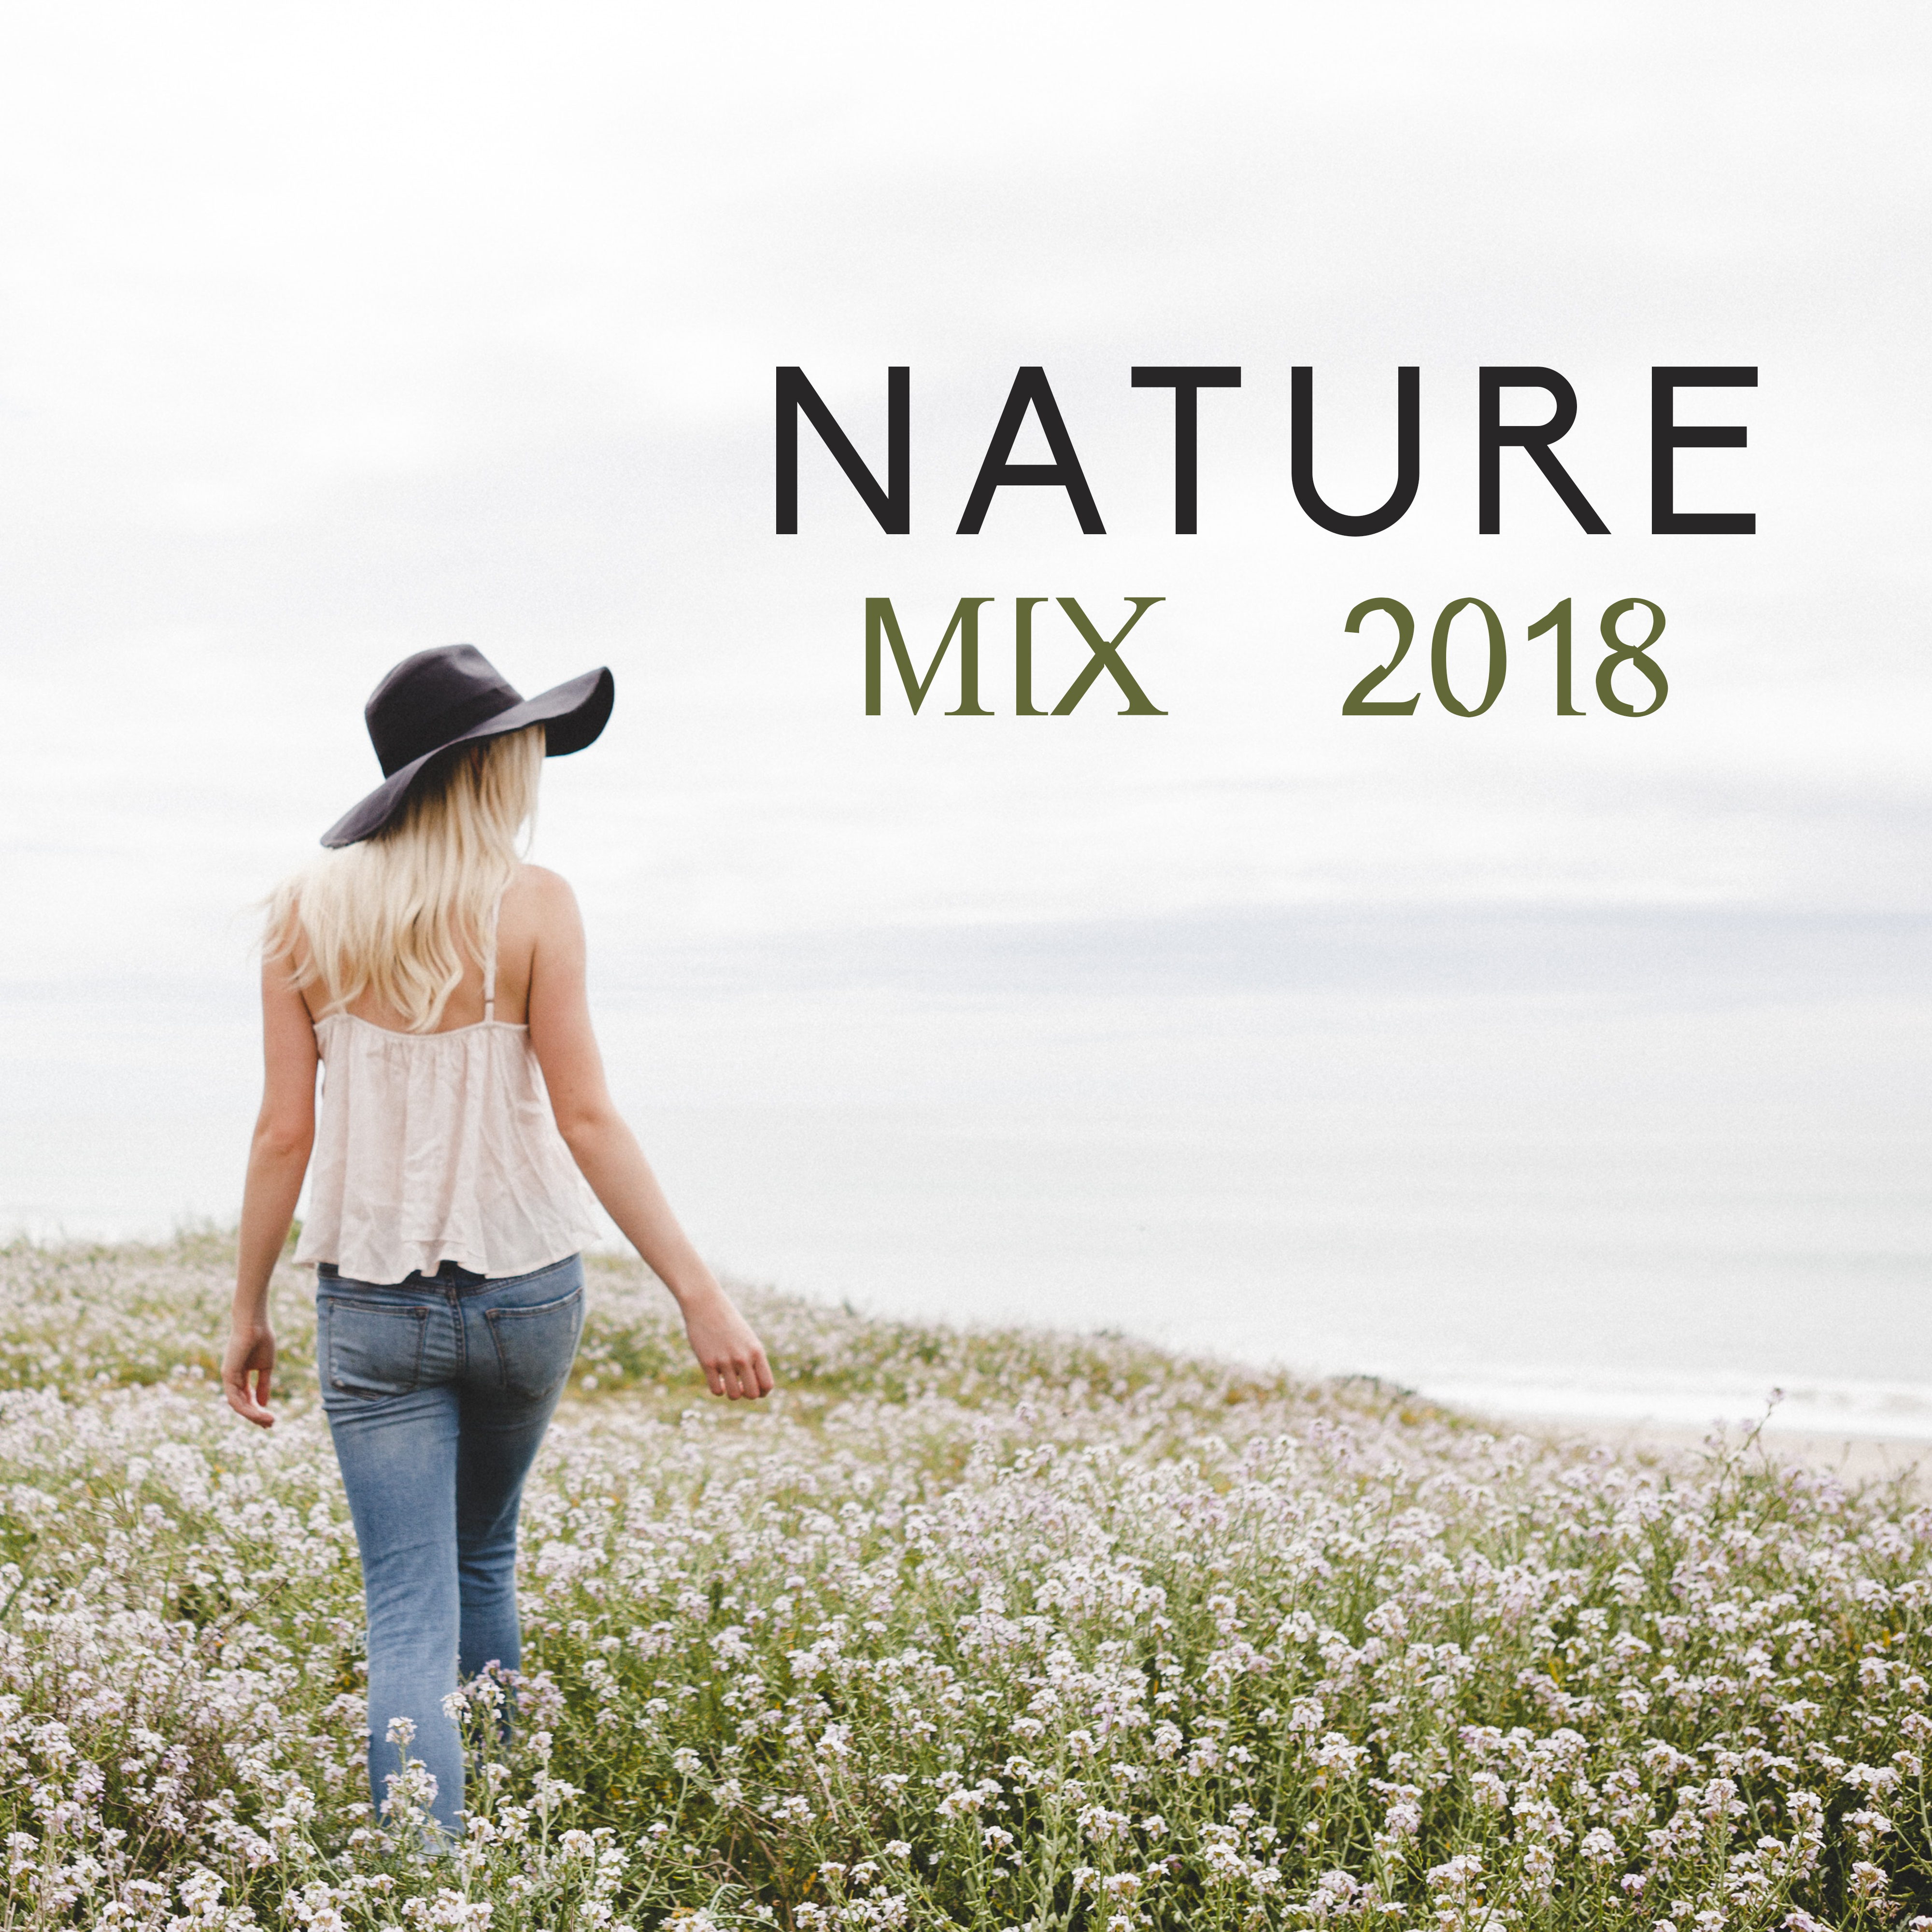 Nature Mix 2018